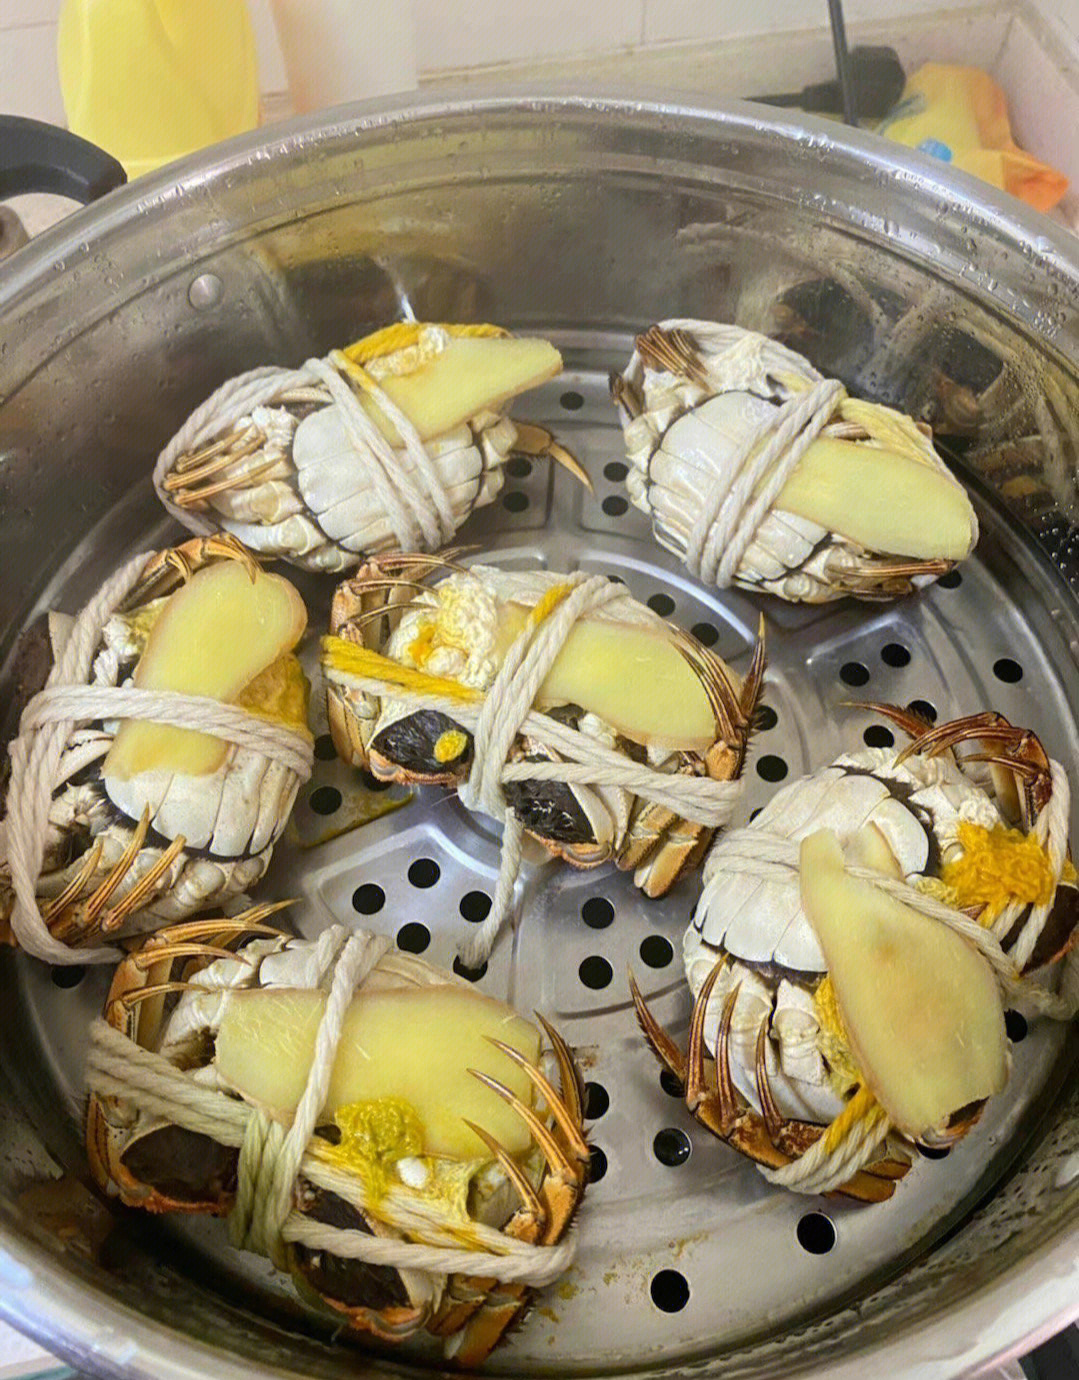 蒸大闸蟹的时候一定要把肚子朝上,减少蟹黄流出,不然太浪费了大闸蟹是